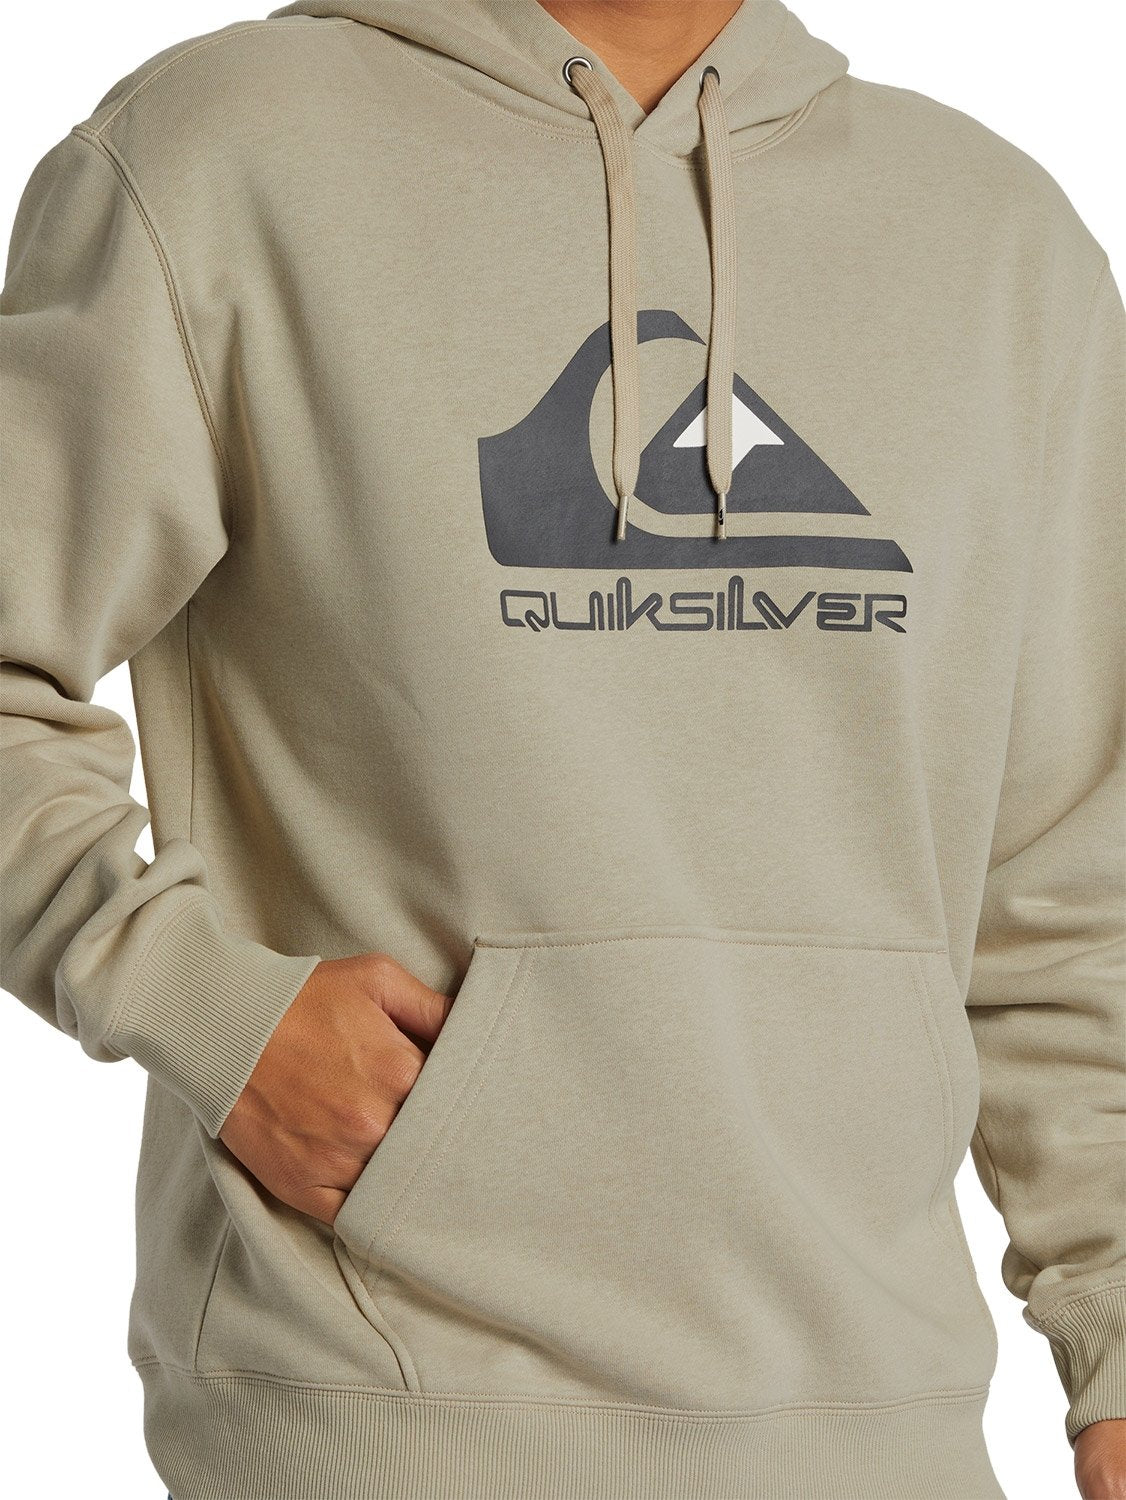 Quiksilver Men's Big Logo Hoodie